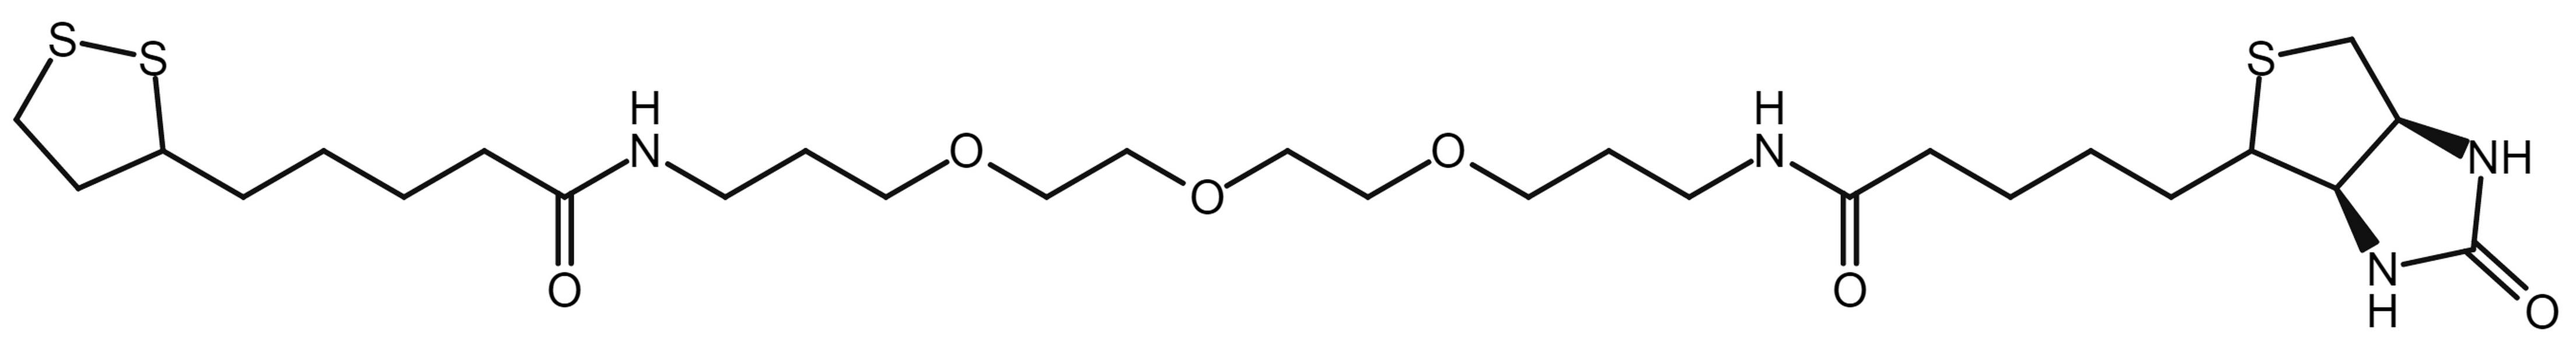 Lipoamide-PEG3-biotin